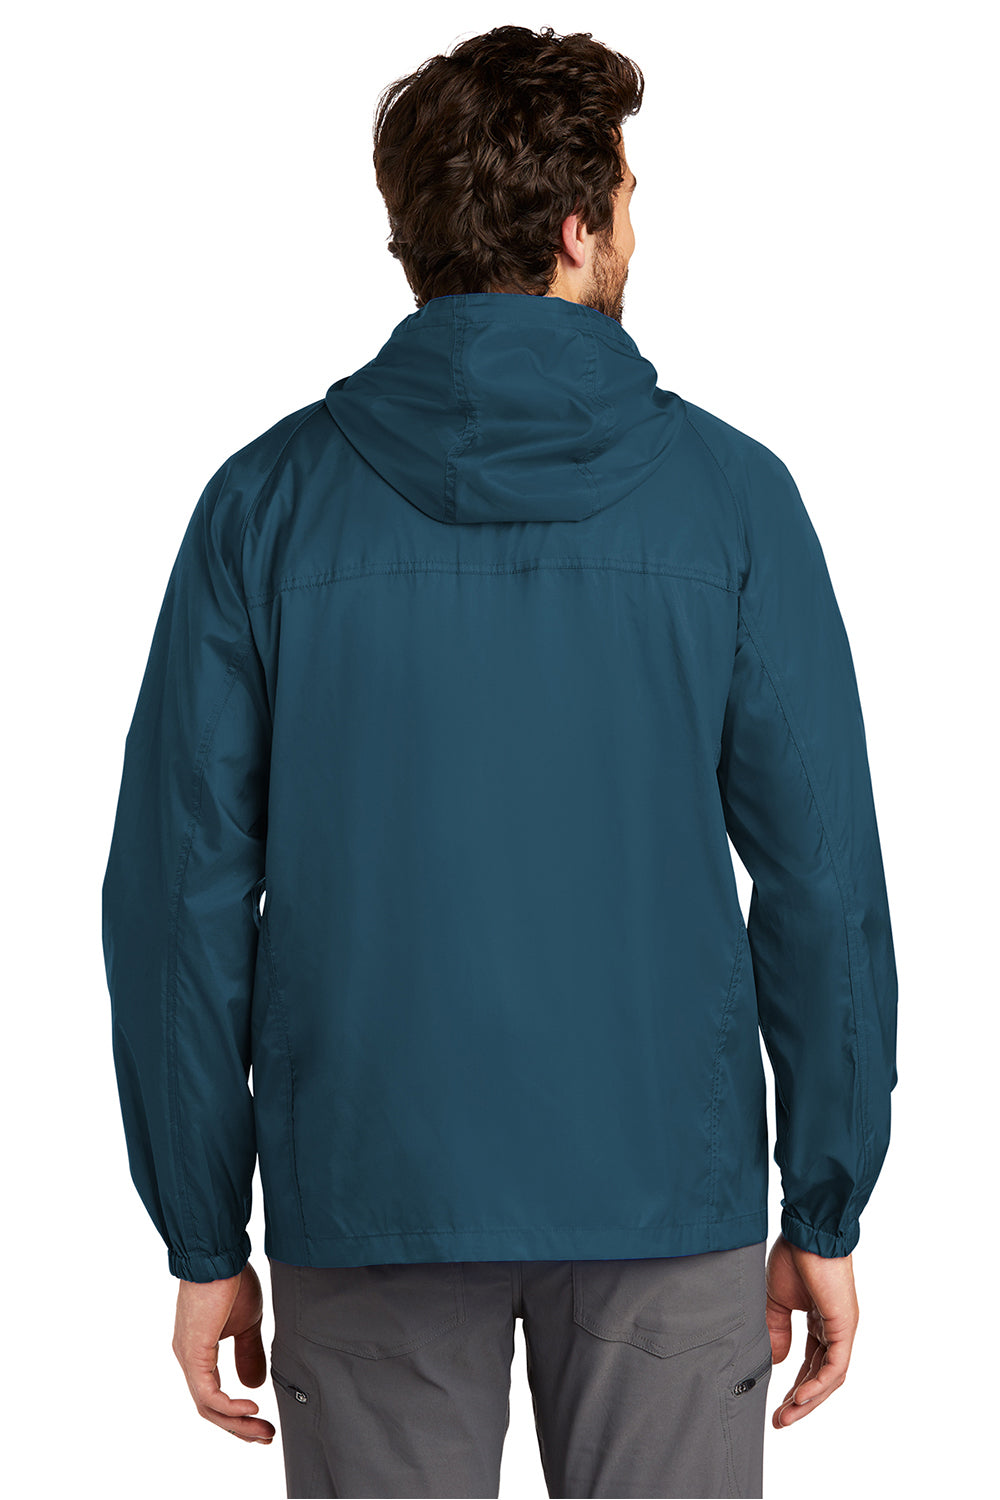 Eddie Bauer EB500 Mens Packable Wind Resistant Full Zip Hooded Jacket Adriatic Blue Model Back